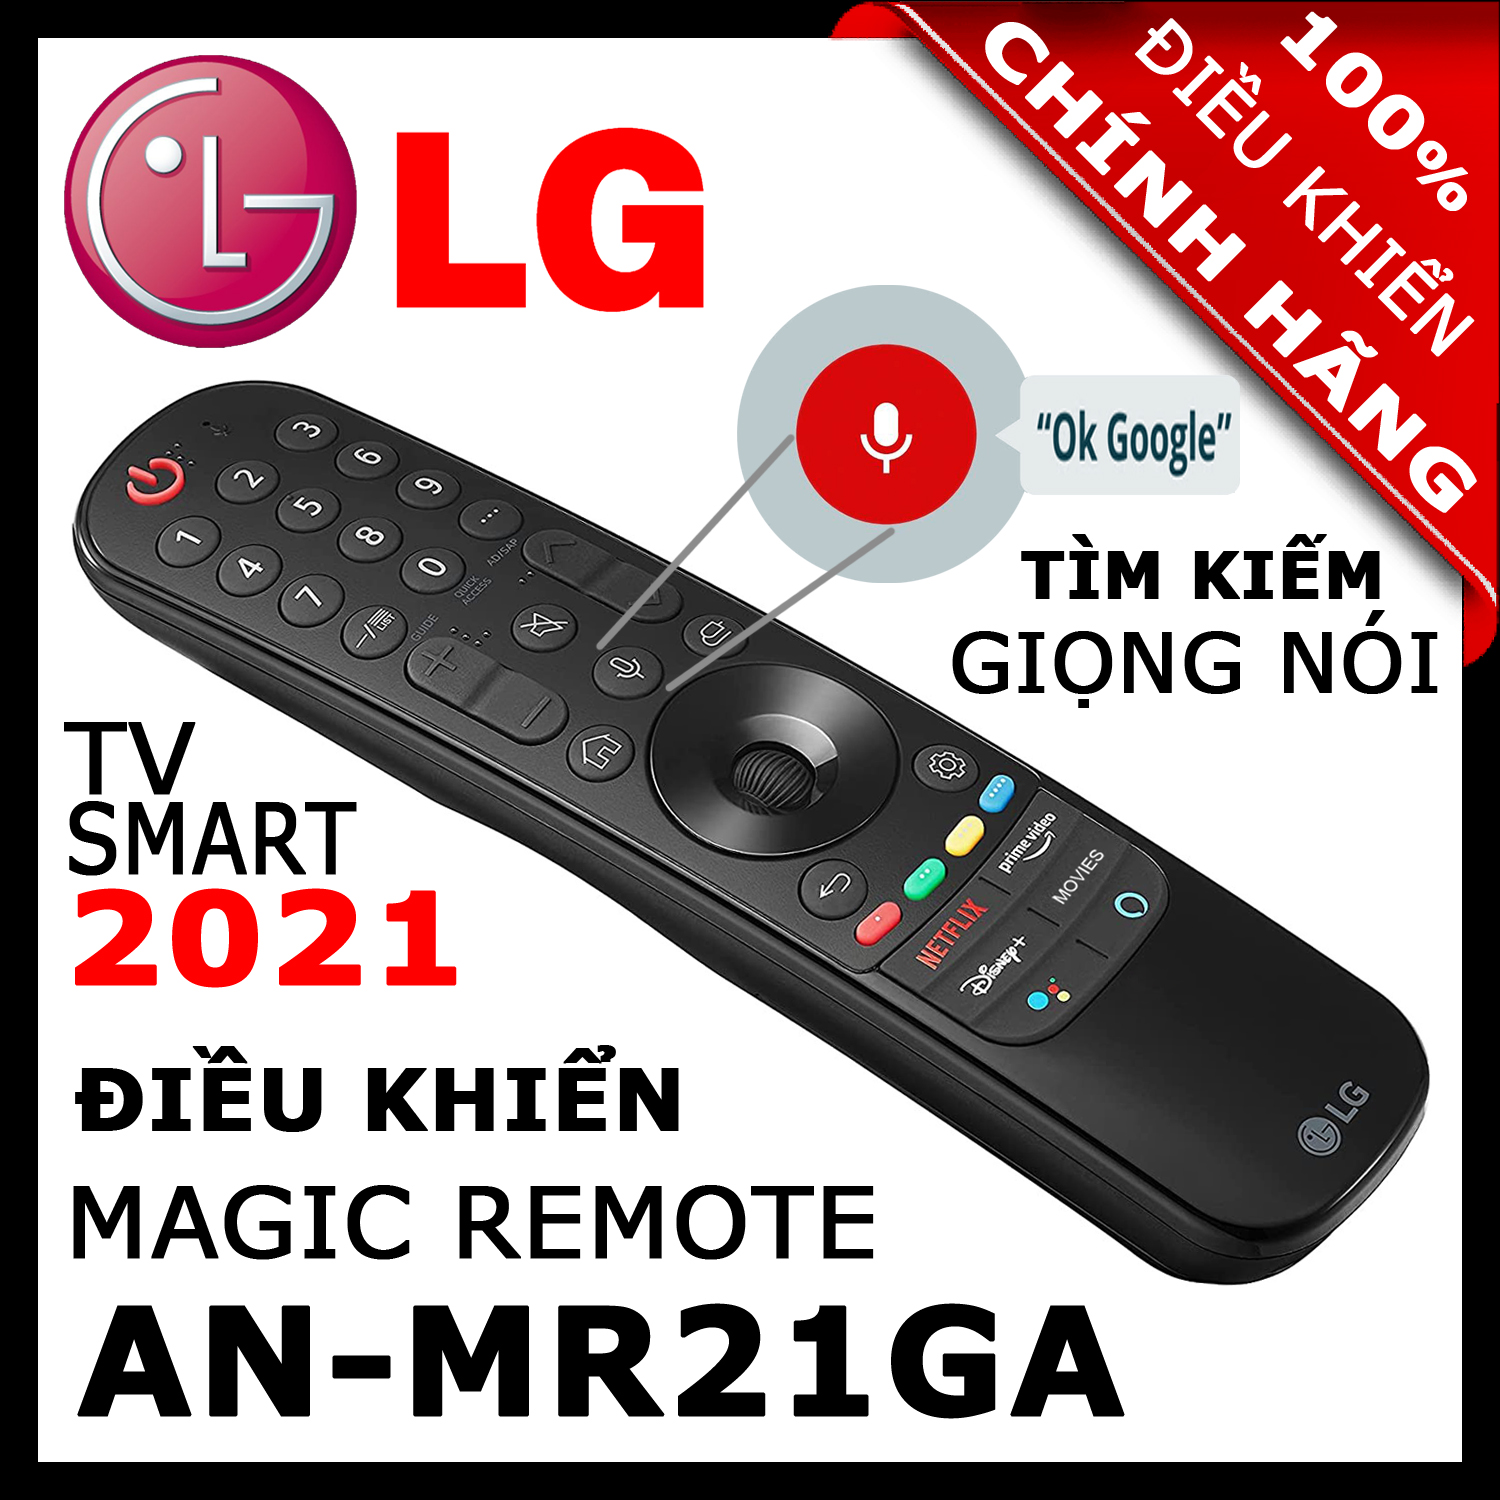 ĐIỀU KHIỂN Remote Tivi LG MR21GA thay thế MR20GA và MR19BA và MR18BA và MR650A có Giọng nói Chuột bay cho tivi LG 2021, 2020, 2019, 2018, 2017 Magic Remote AN-MR21GA mã số AKB76036204 HÀNG XỊN. Remote cho tivi LG sản xuất năm 2021